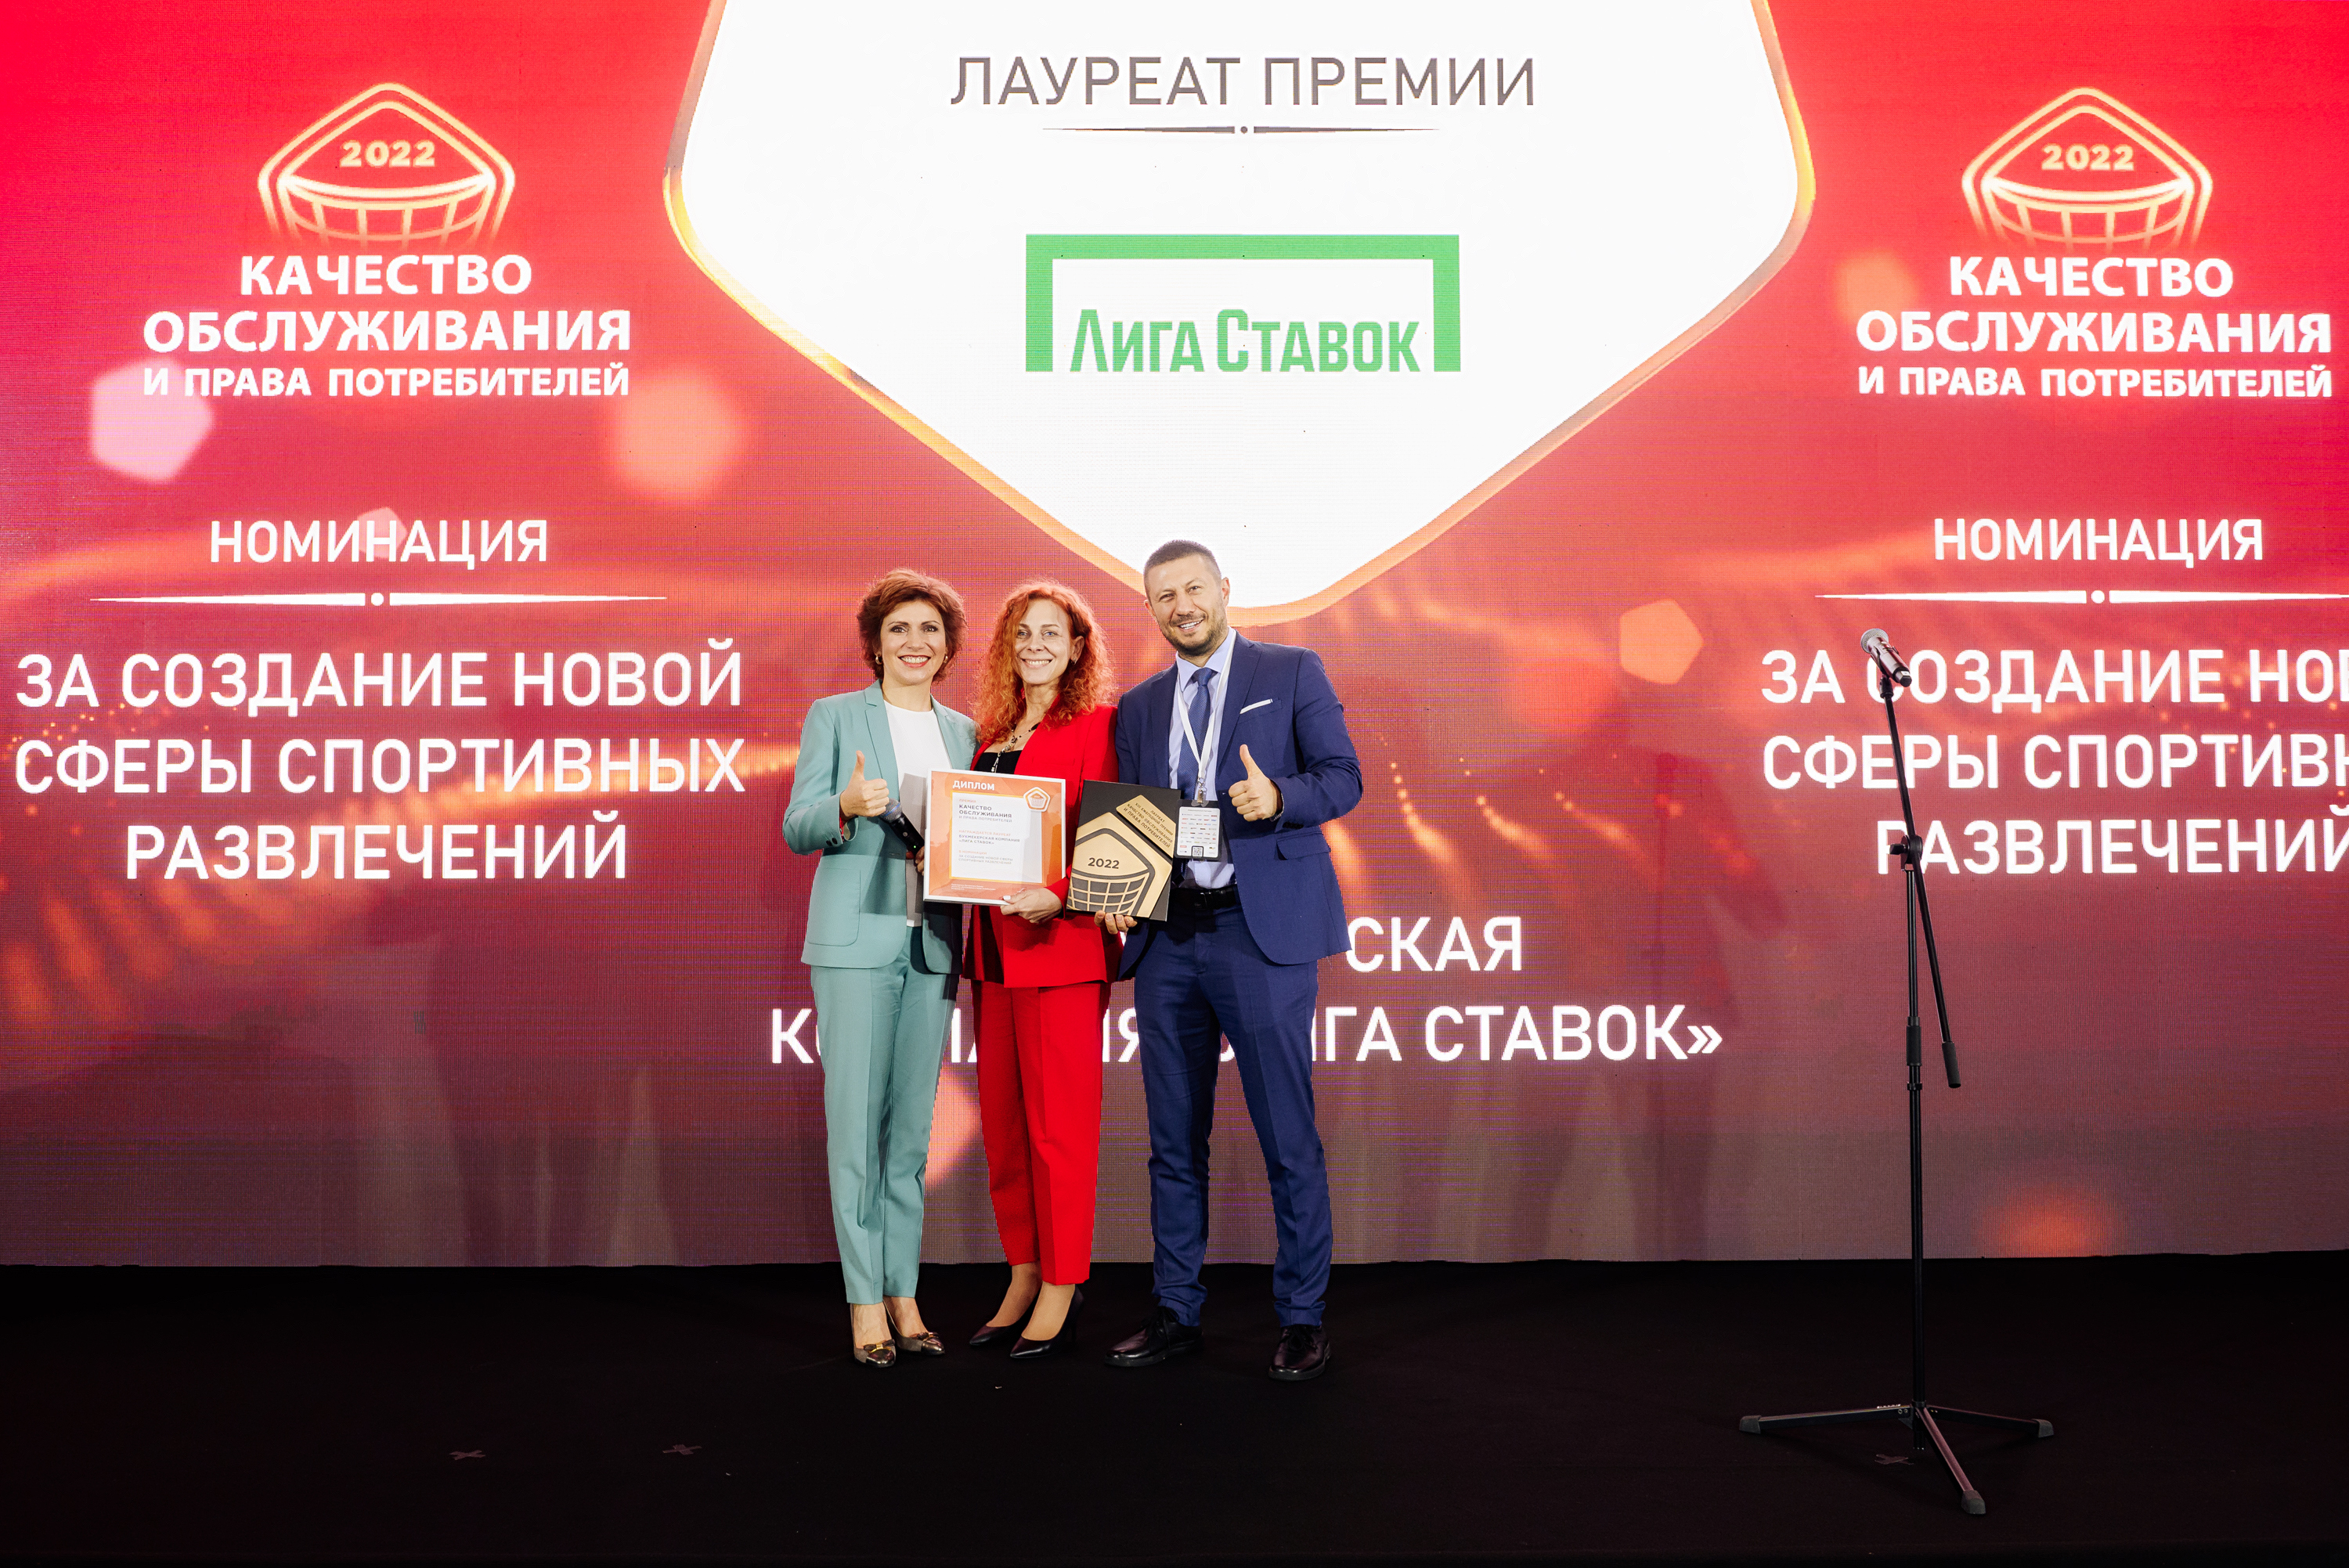 «Лига Ставок» победила в двух номинациях премии «Качество обслуживания и права потребителей»